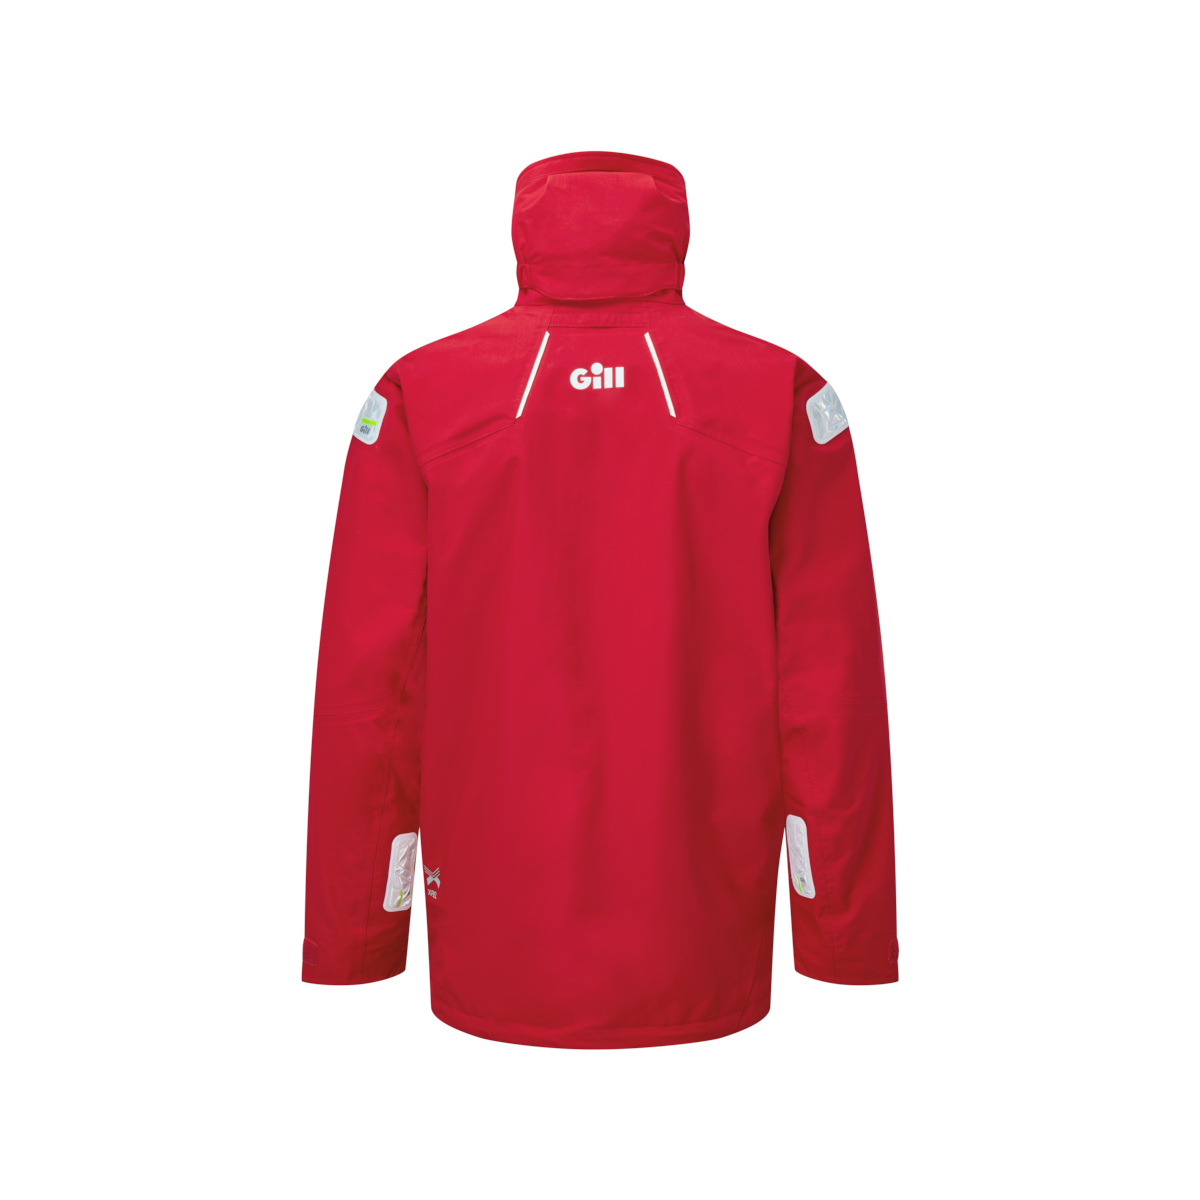 Gill OS25 veste de voile offshore homme rouge, taille M